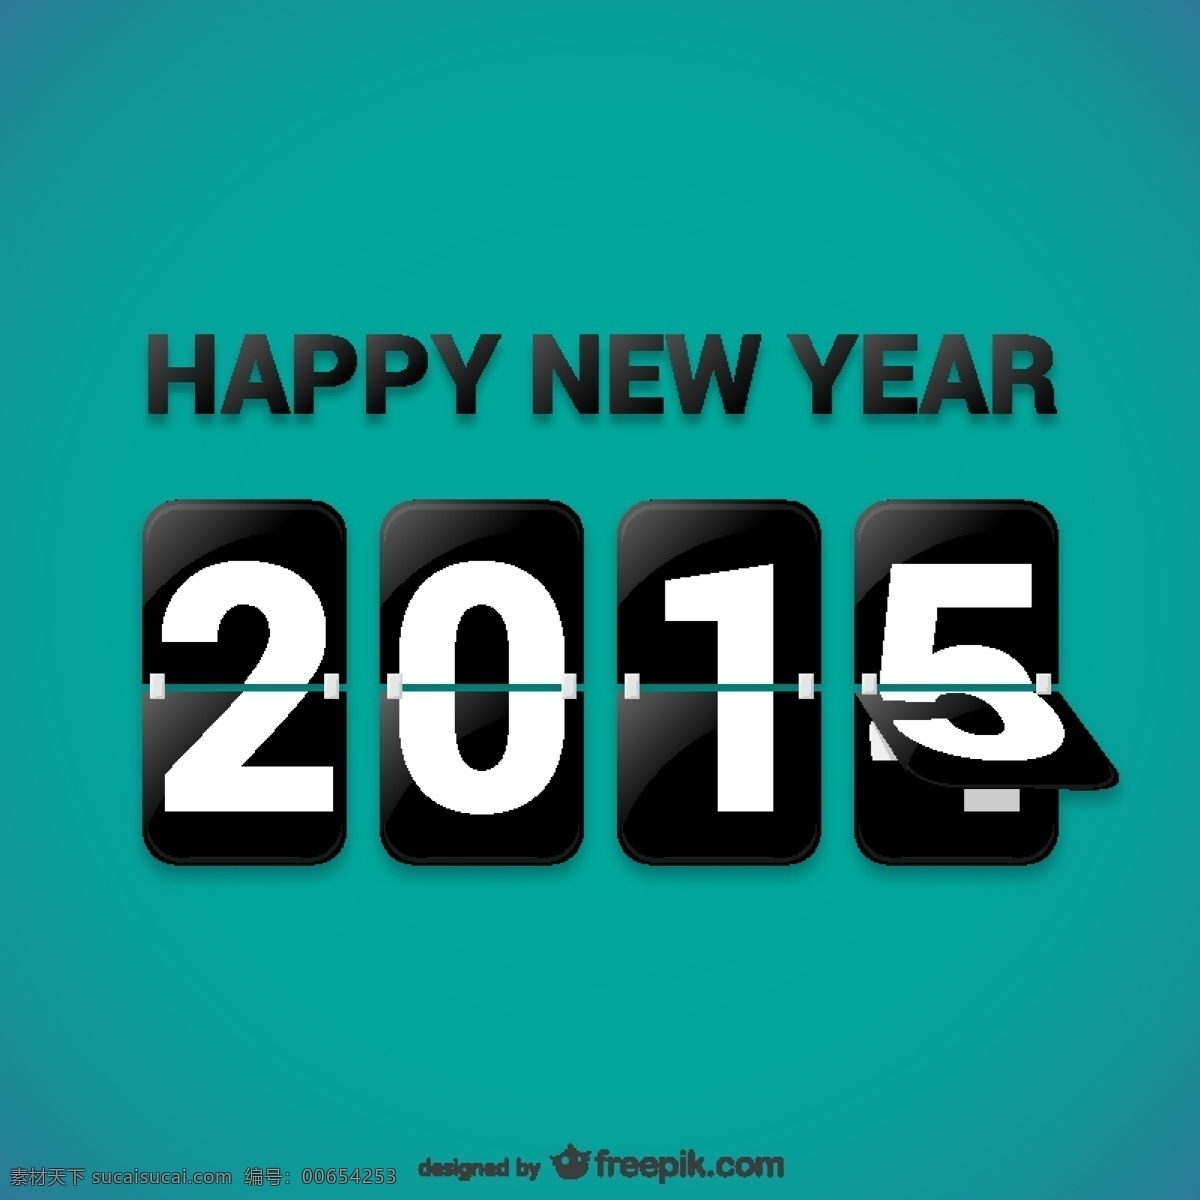 快乐 2015 背景 卡片 新年快乐 新 年 新的一年 青色 天蓝色